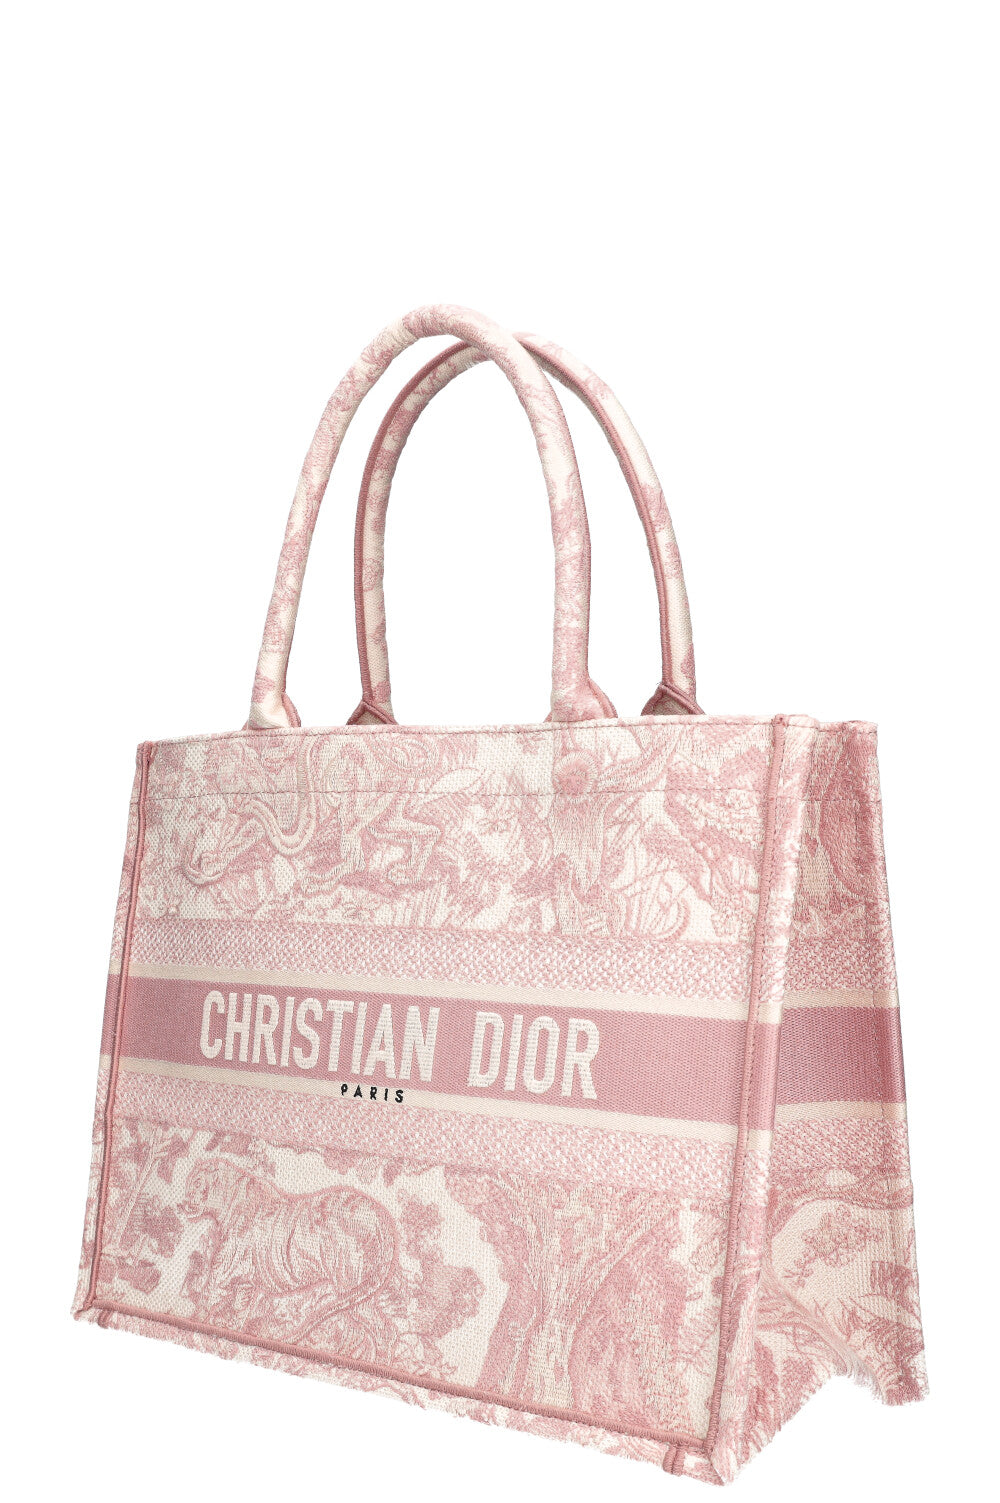 Christian Dior Book Tote Medium, Pink Toile De Jouy, Preowned in Dustbag  WA001 - Julia Rose Boston